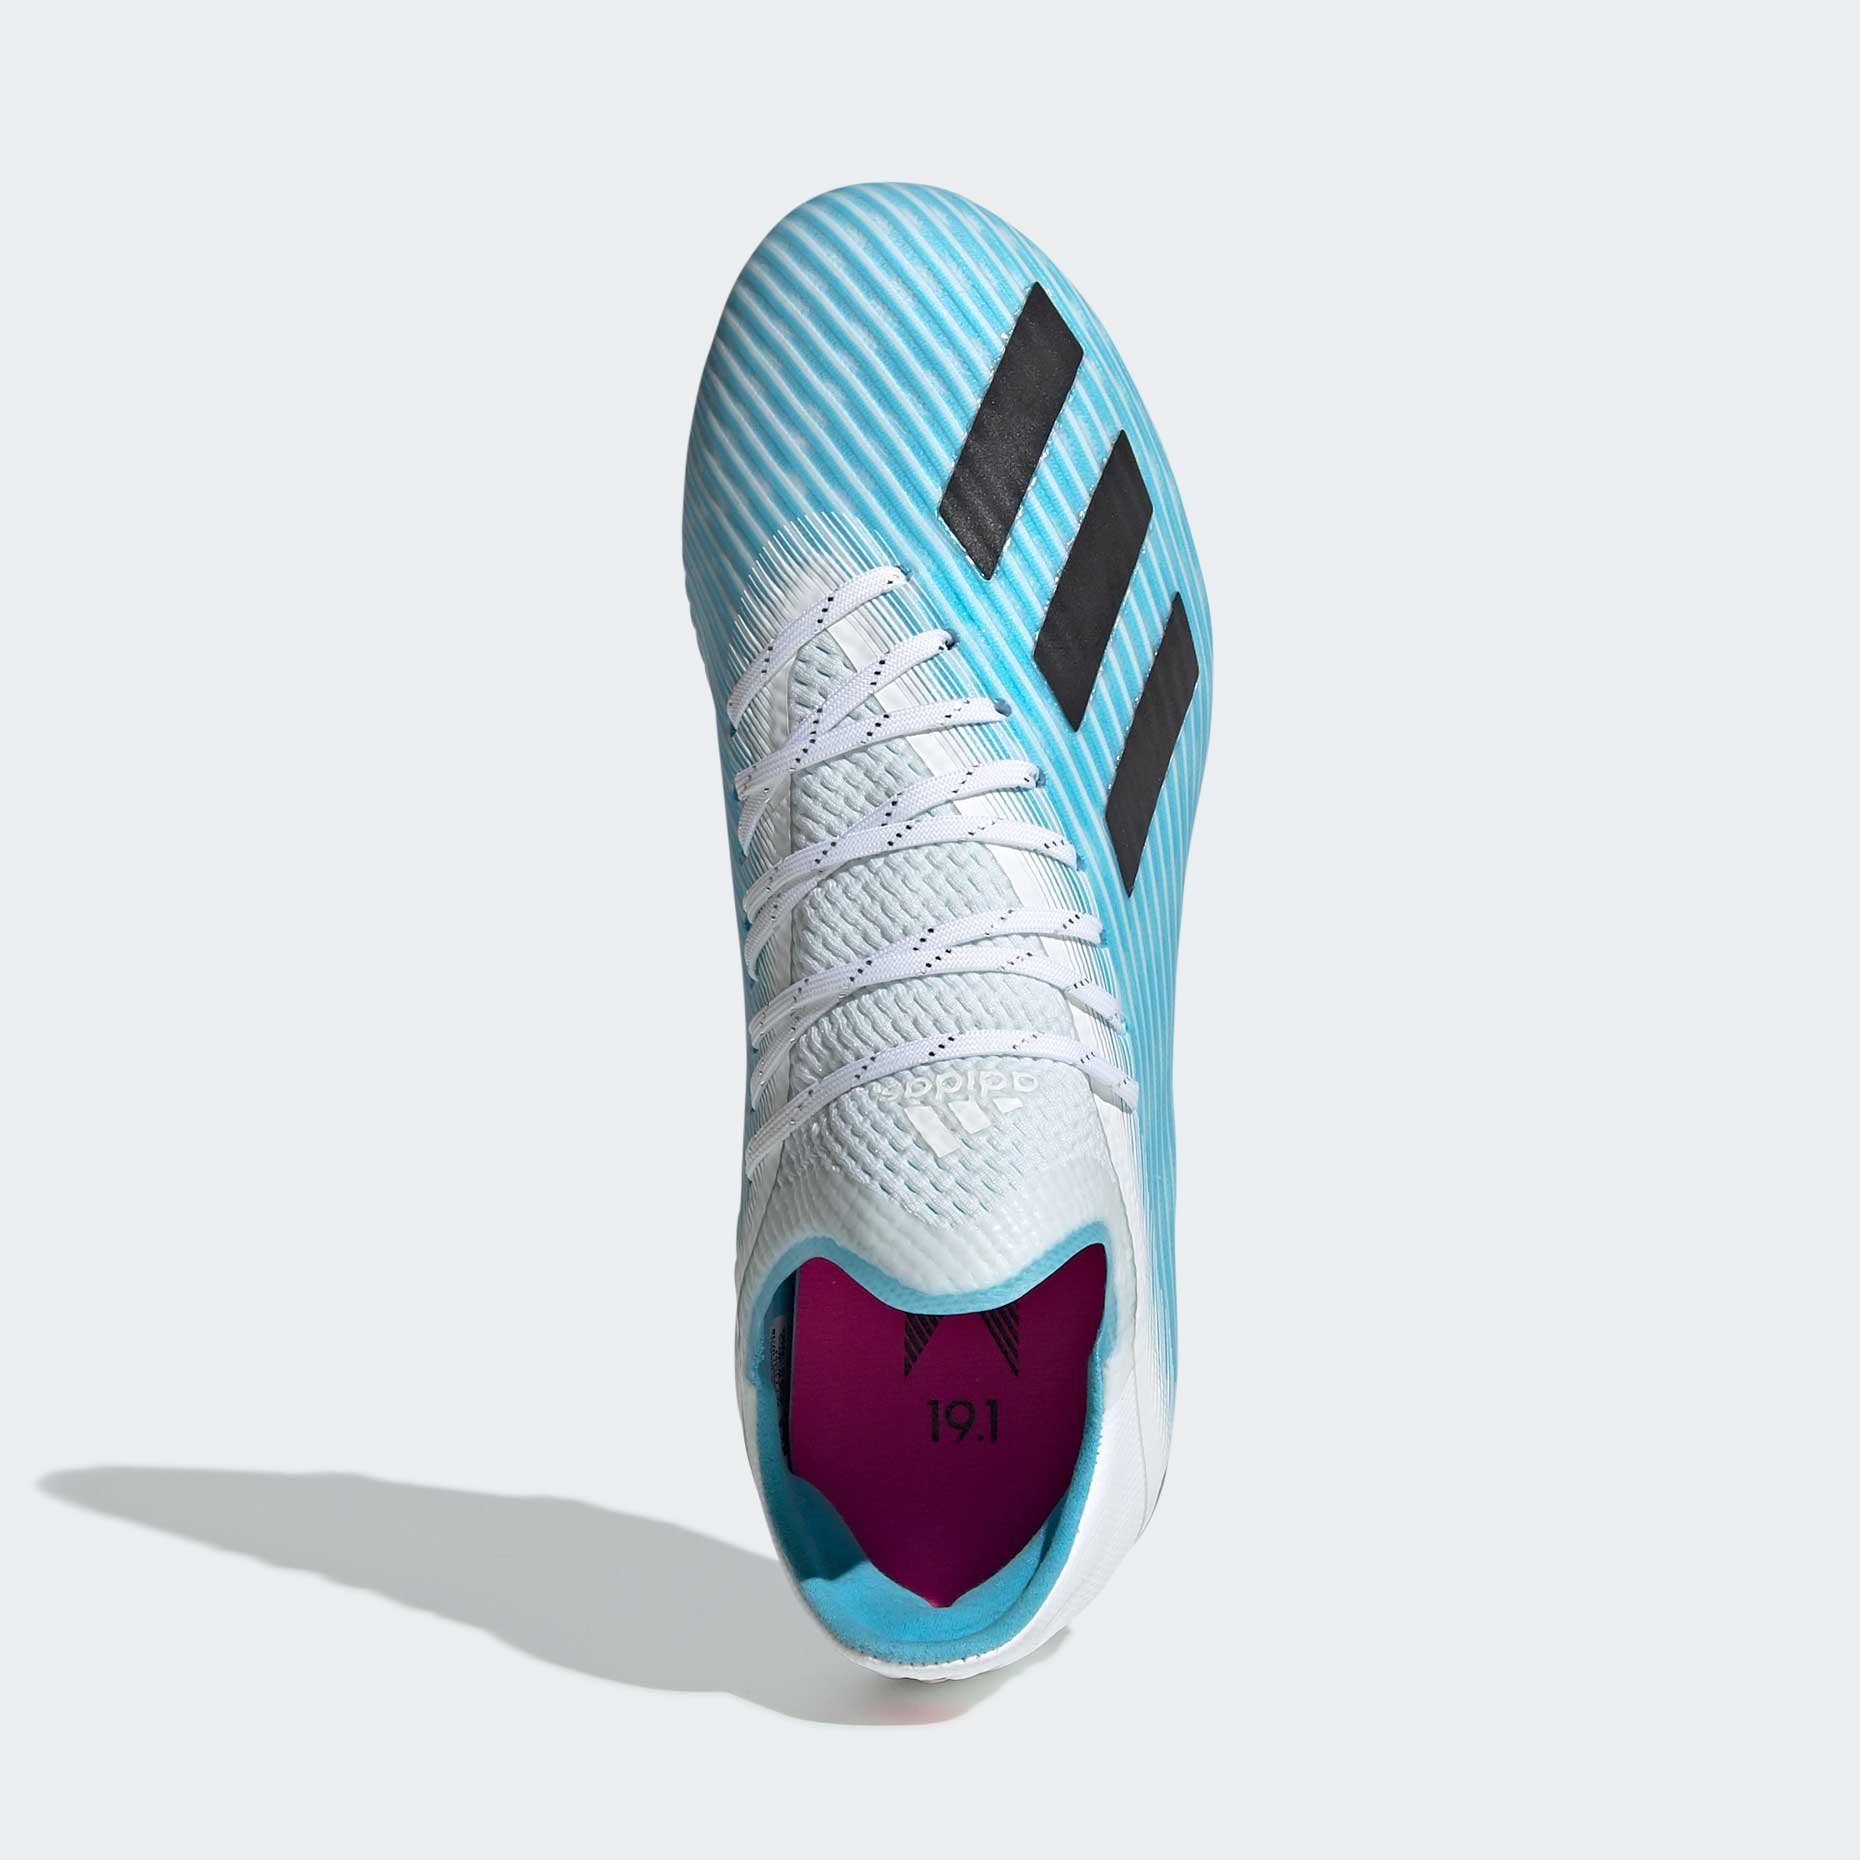 Футбольные бутсы Adidas X 19.1 FG J